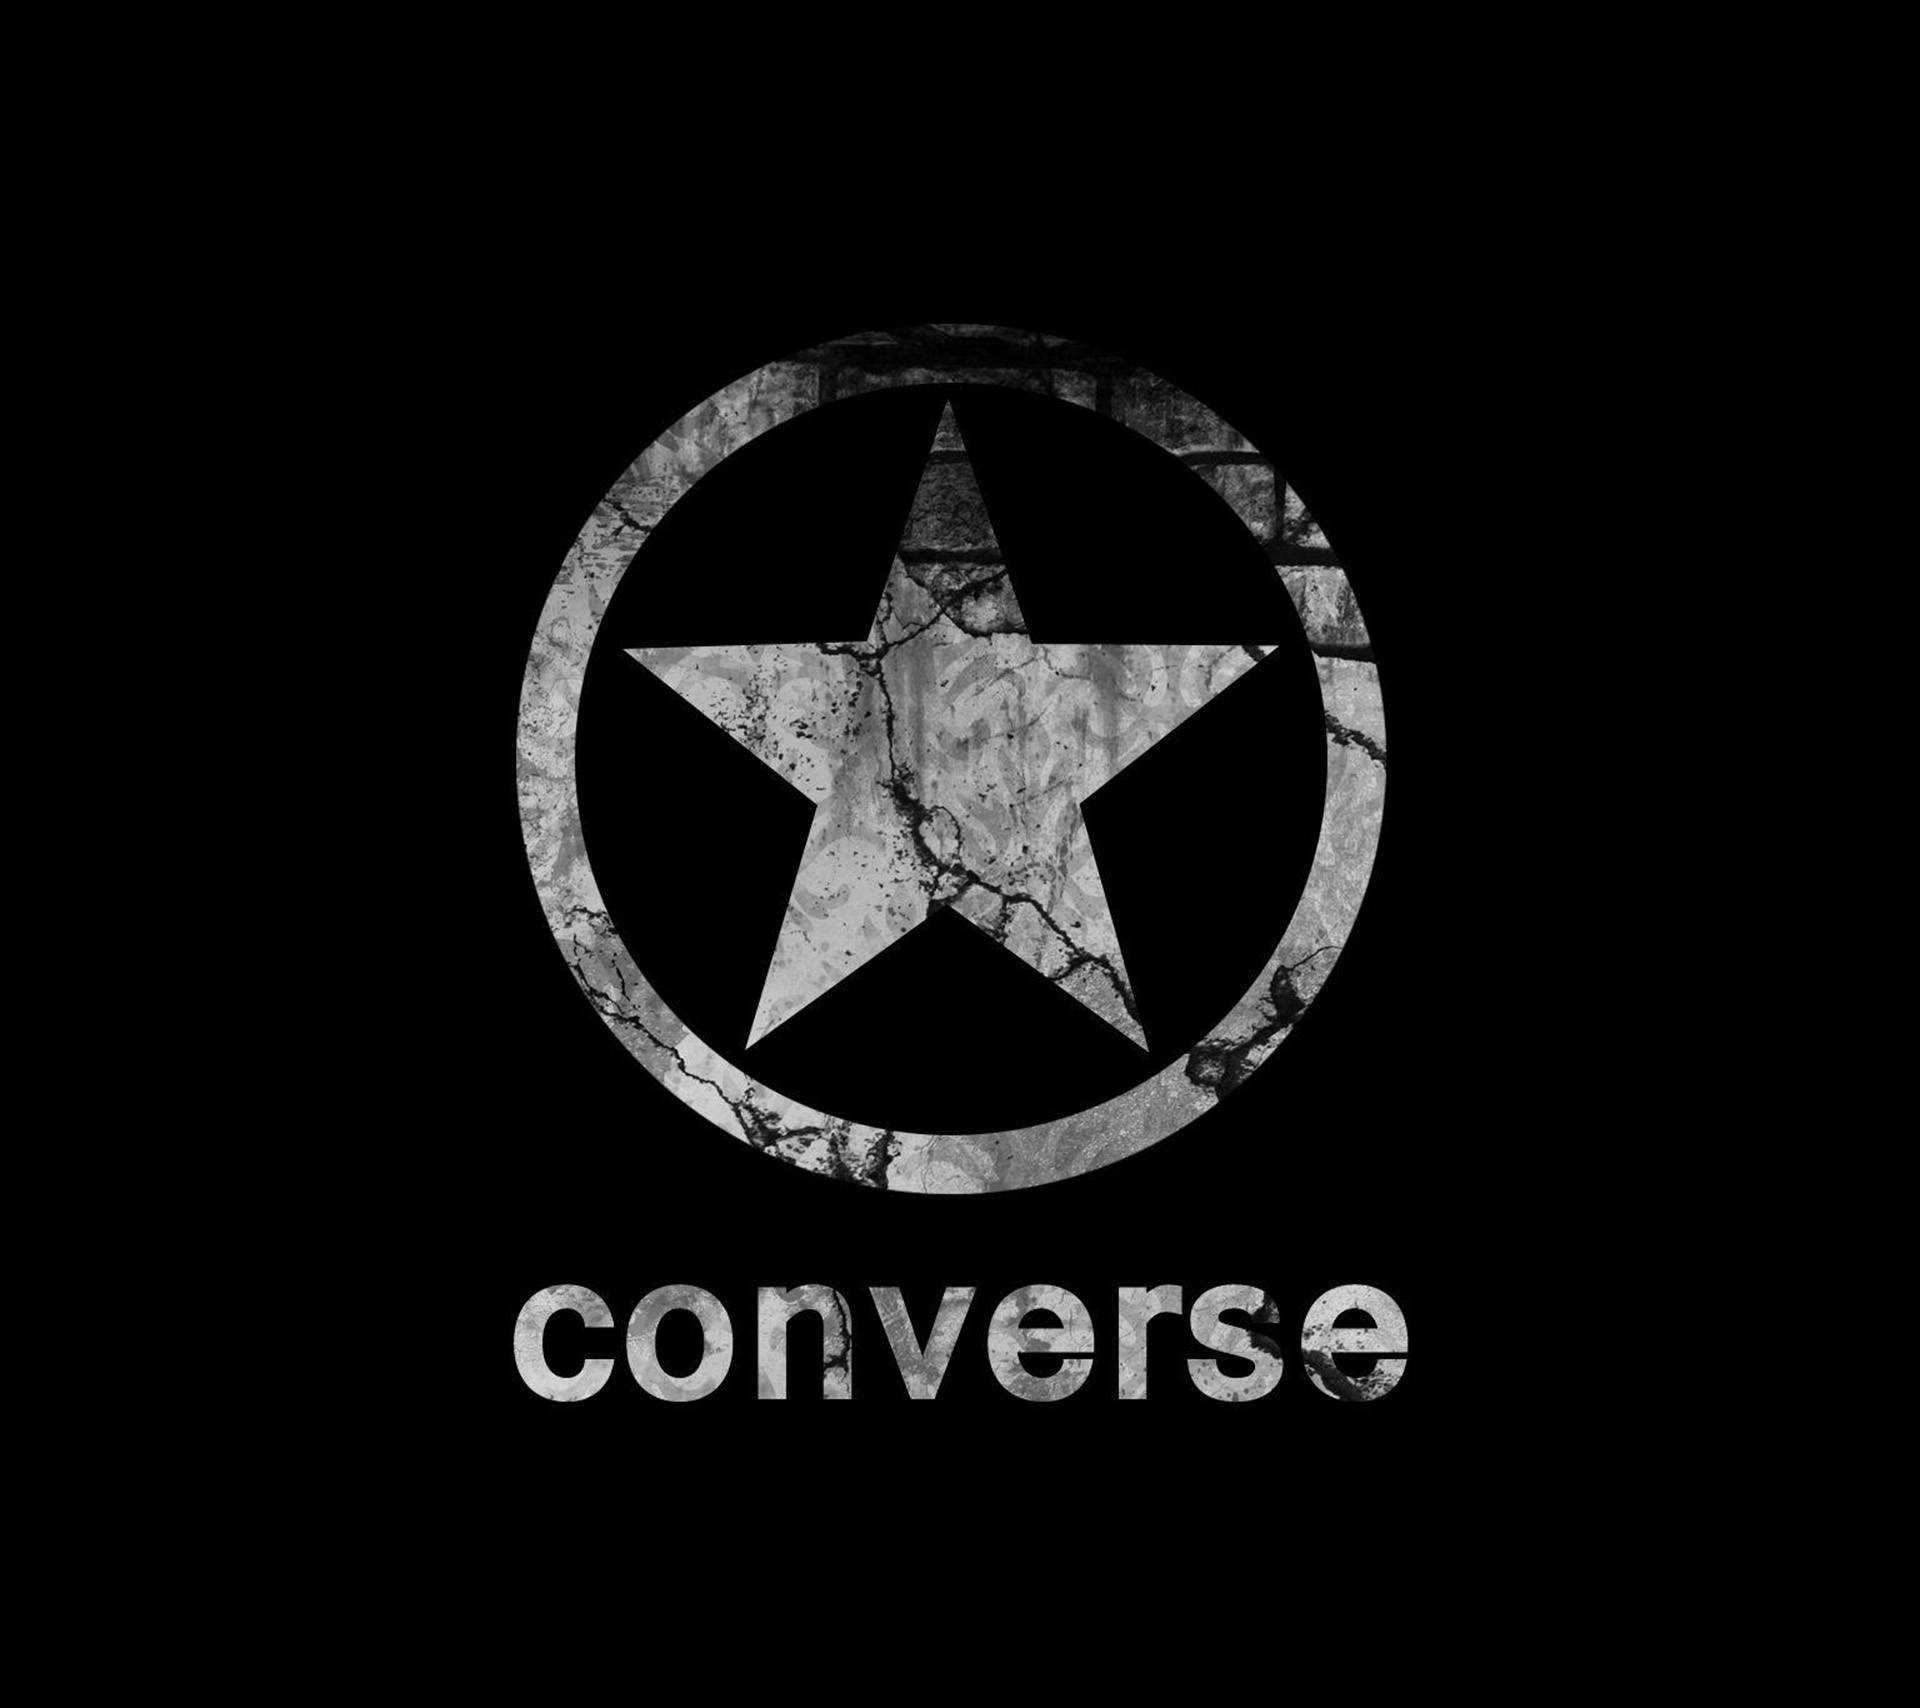 Monochromesconverse-logo Wallpaper